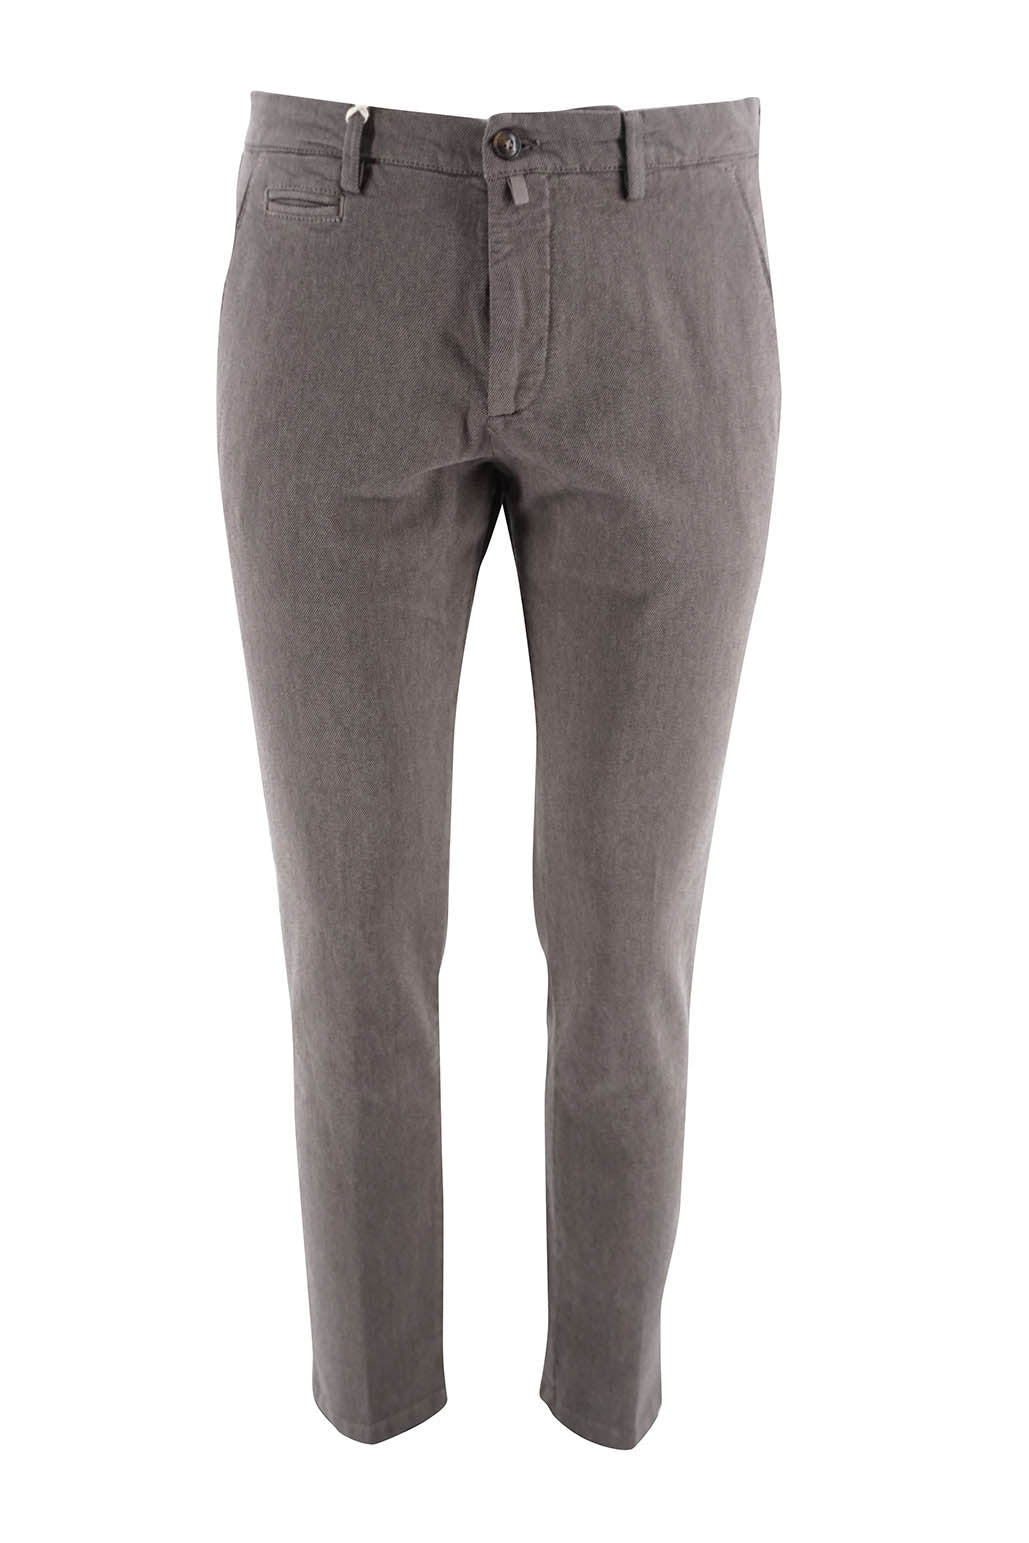 Pantalone Briglia con Tramatura / Grigio - Ideal Moda